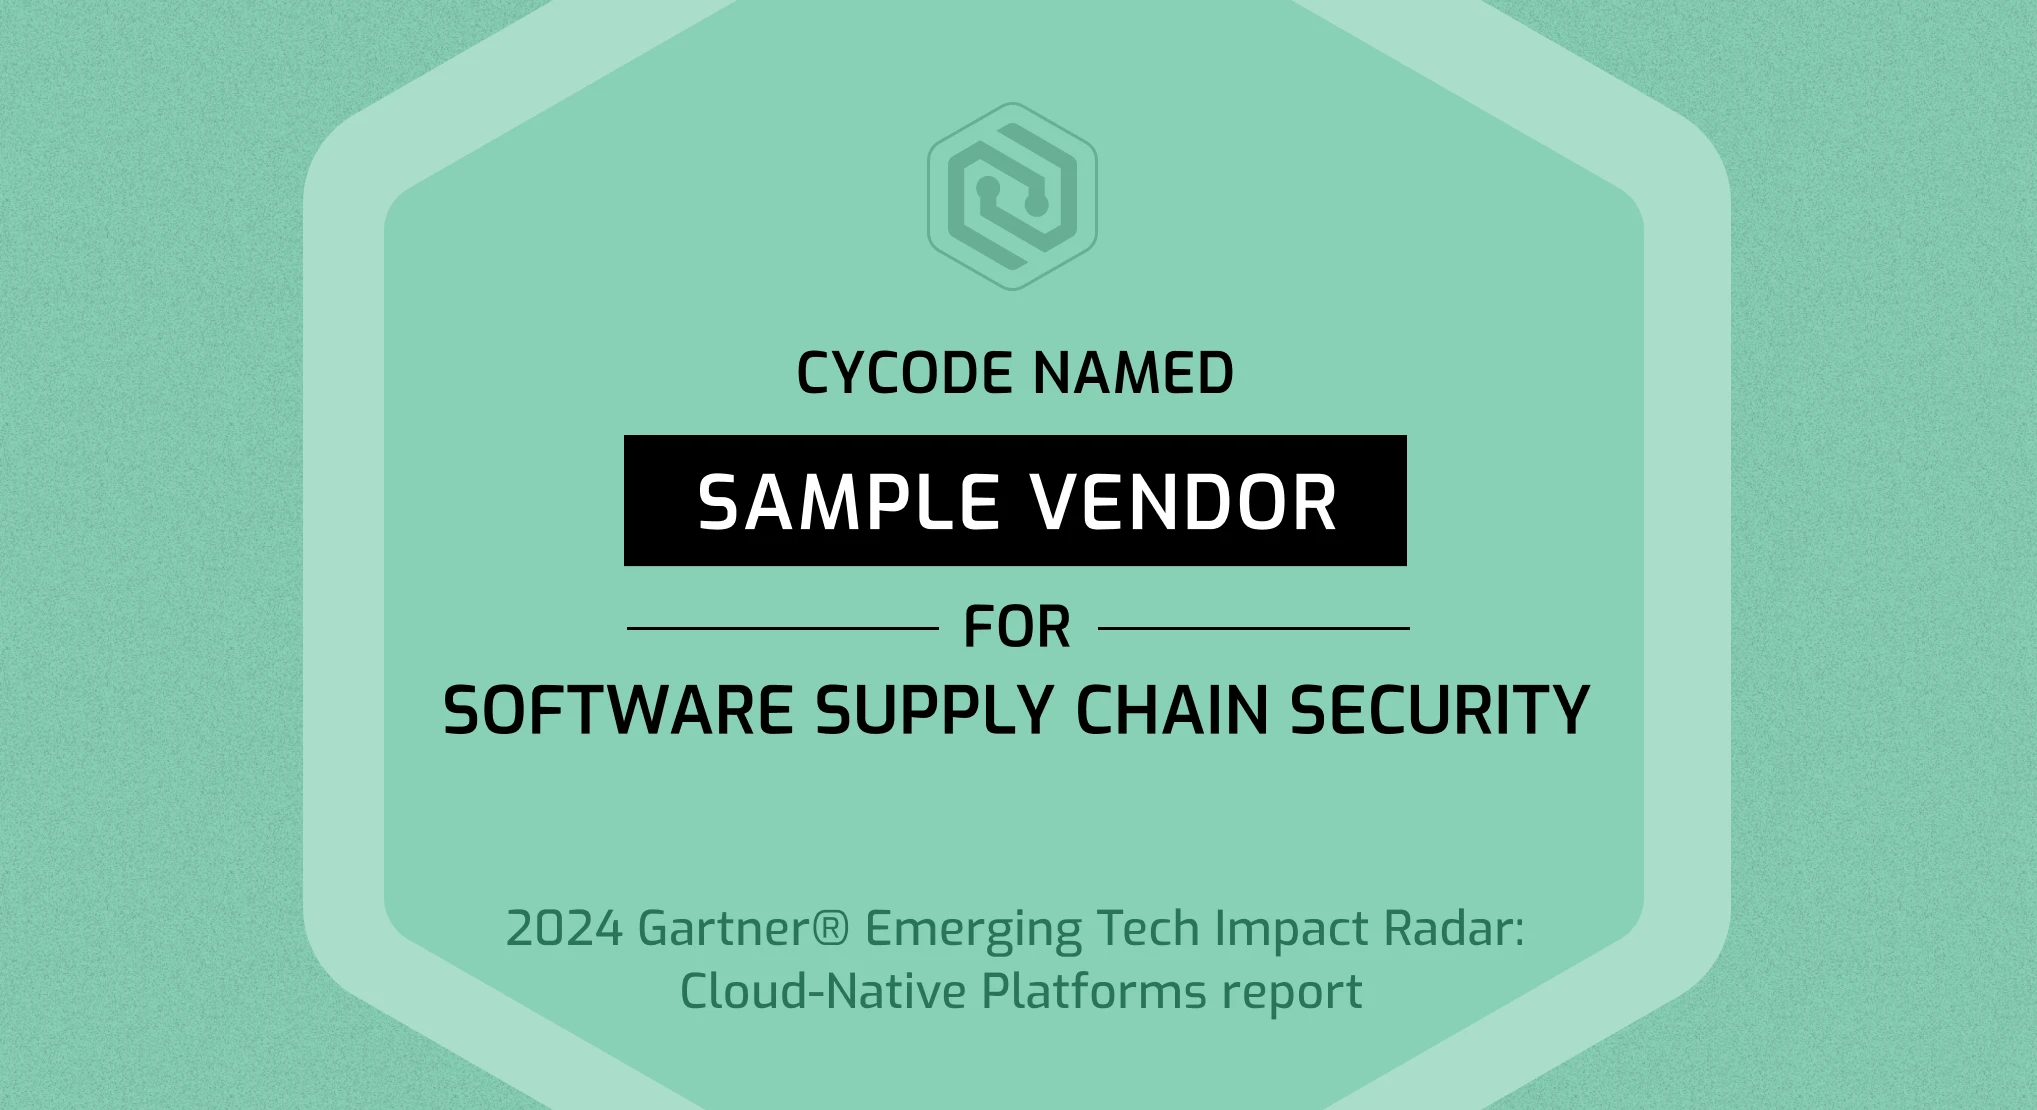 Gartner names Cycode a sample vendor